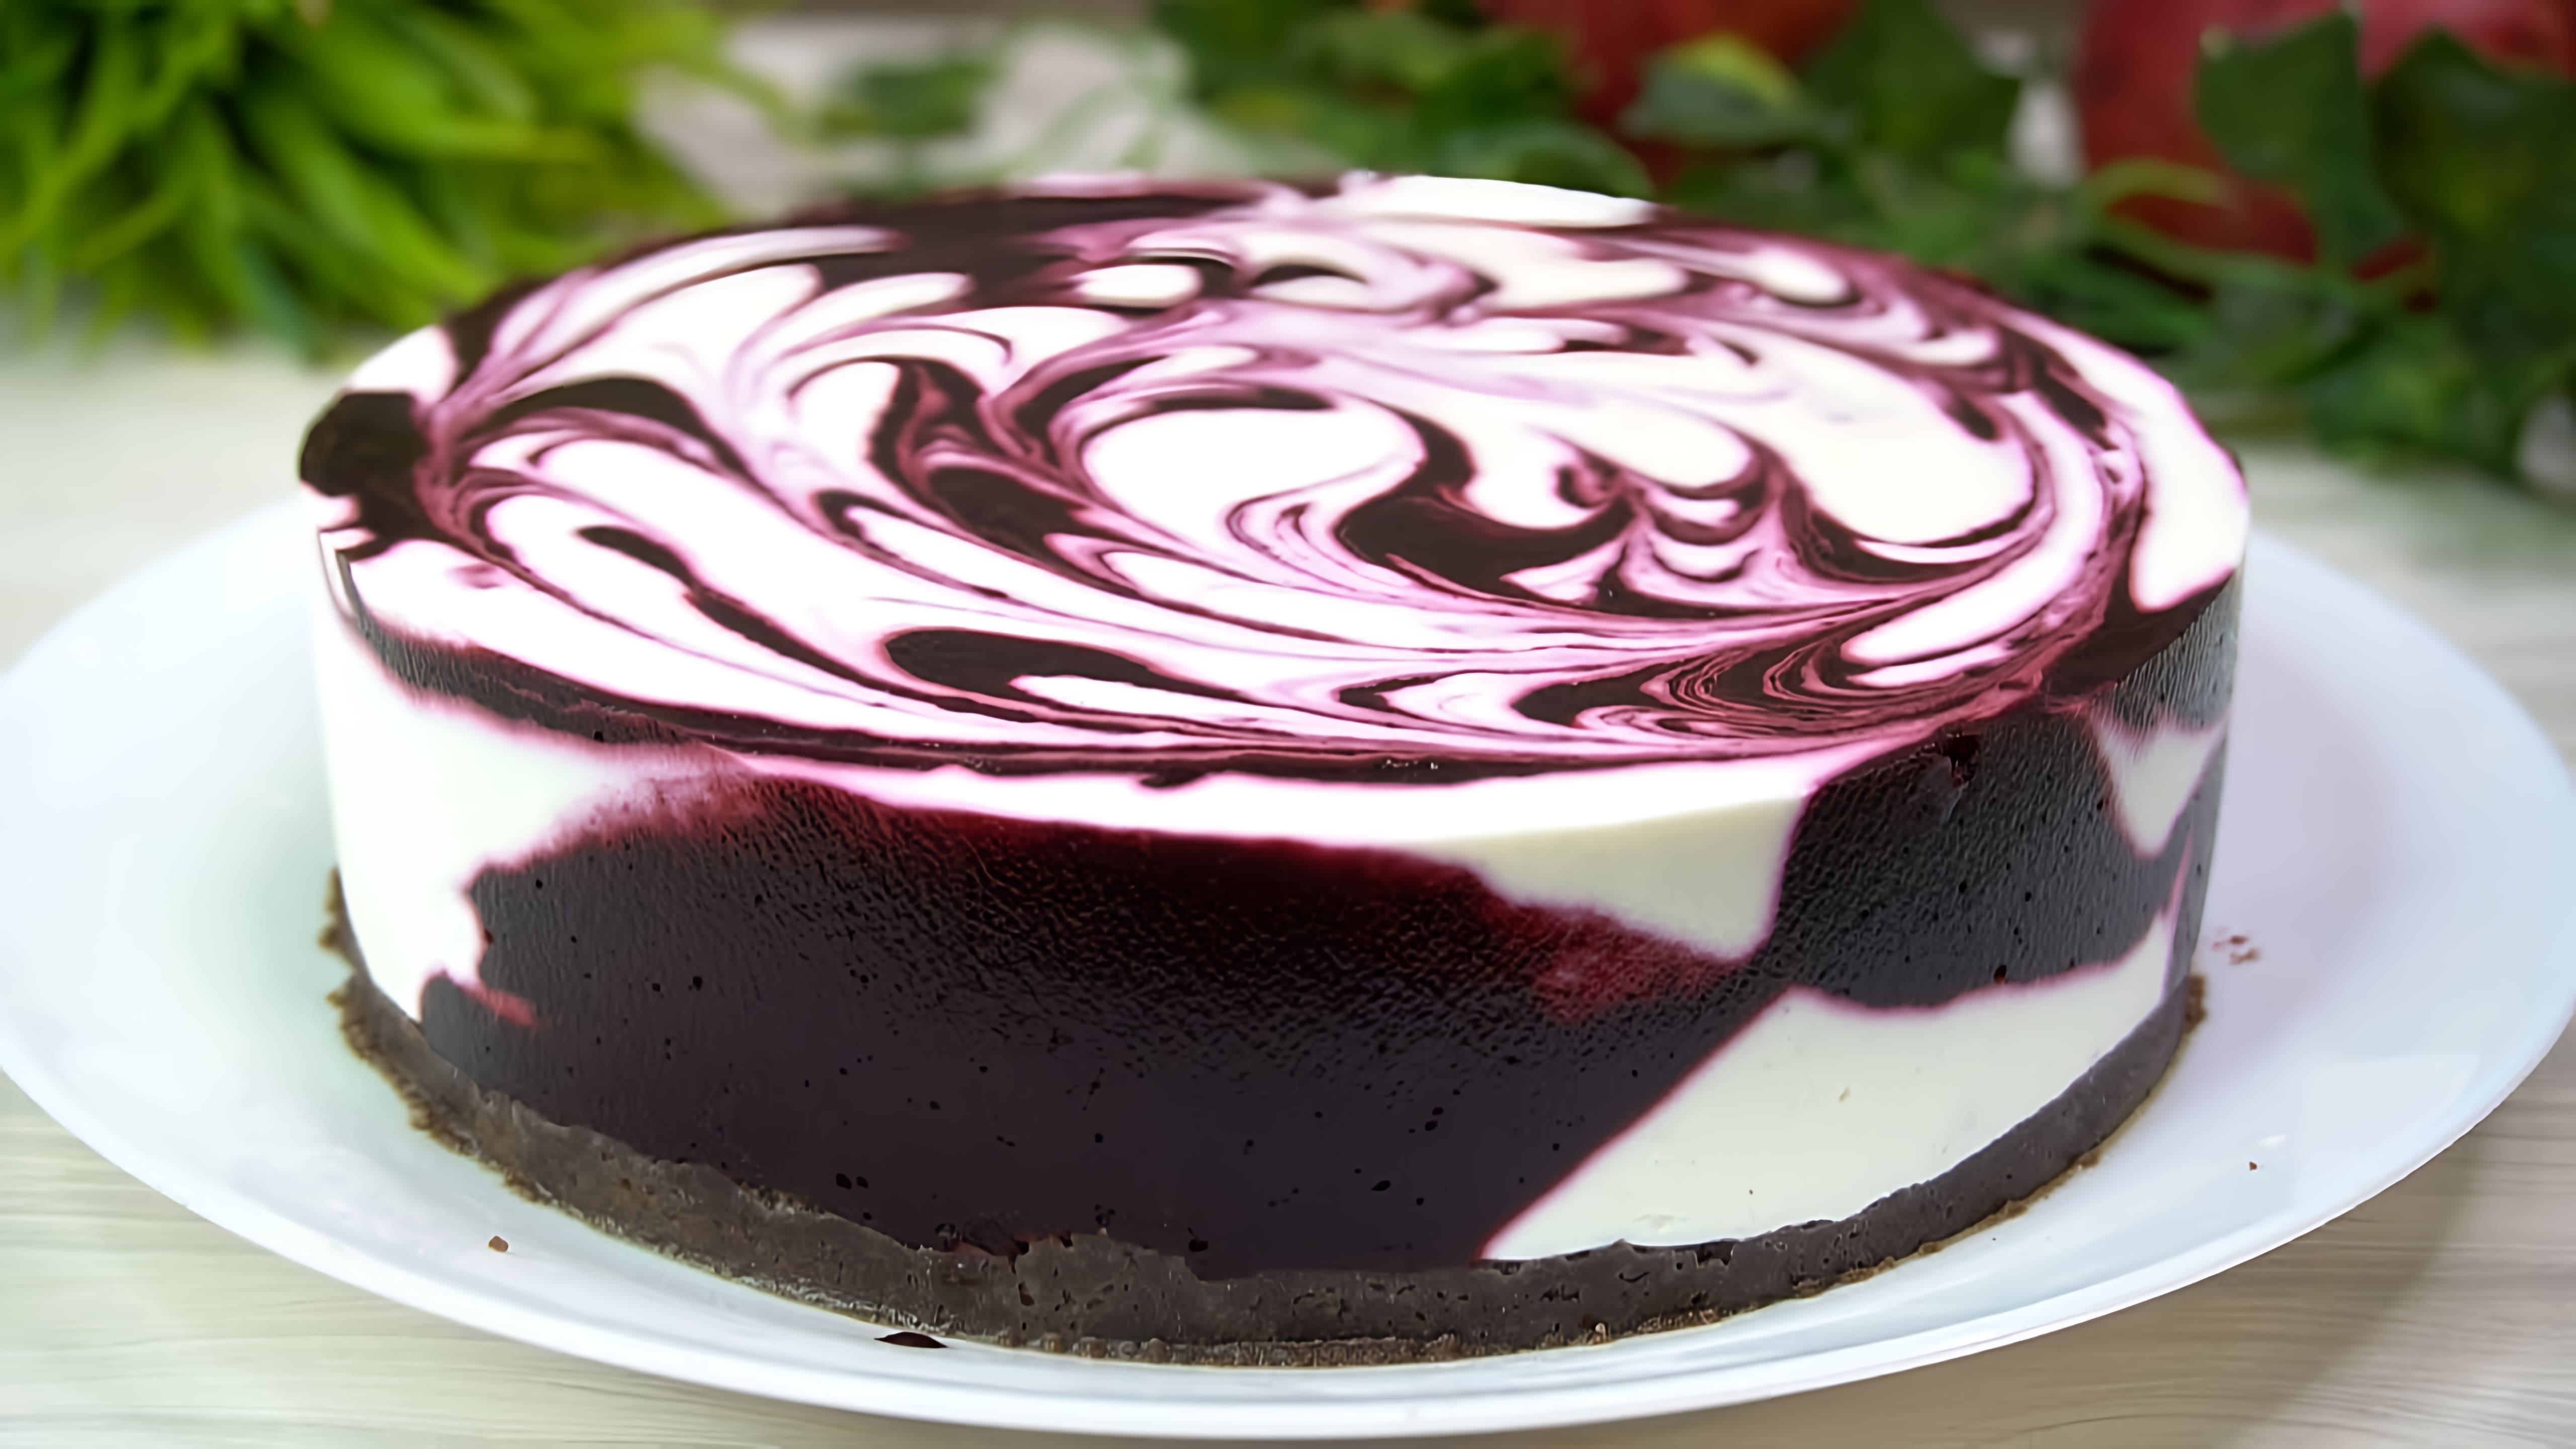 В этом видео демонстрируется рецепт приготовления десерта "Ягодное наслаждение"